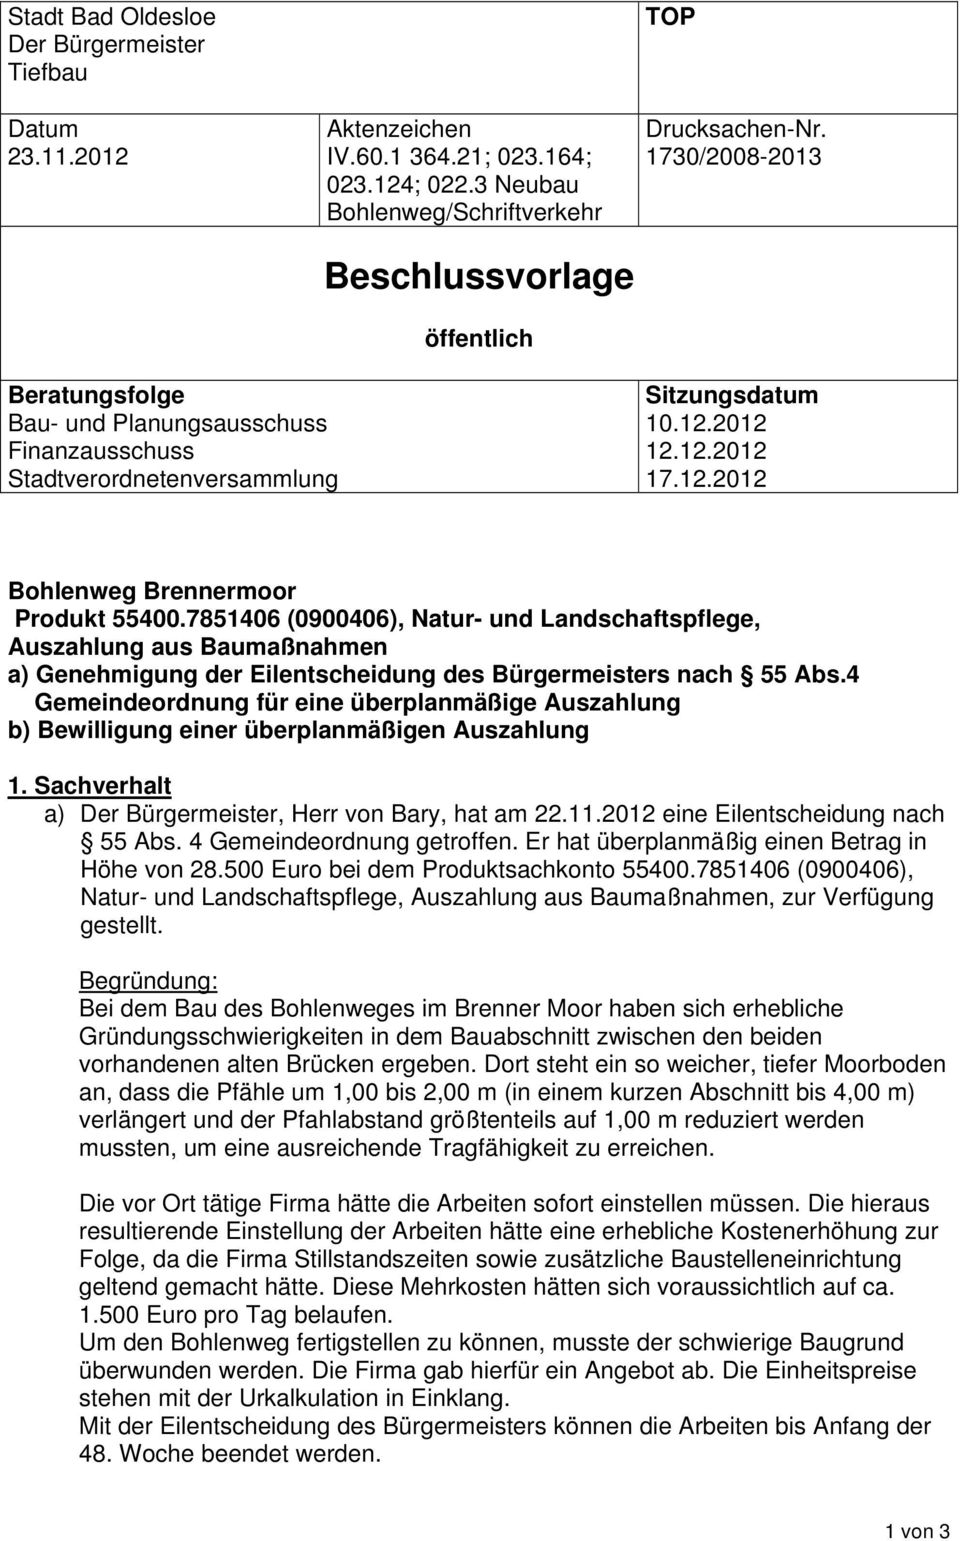 7851406 (0900406), Natur- und Landschaftspflege, Auszahlung aus Baumaßnahmen a) Genehmigung der Eilentscheidung des Bürgermeisters nach 55 Abs.